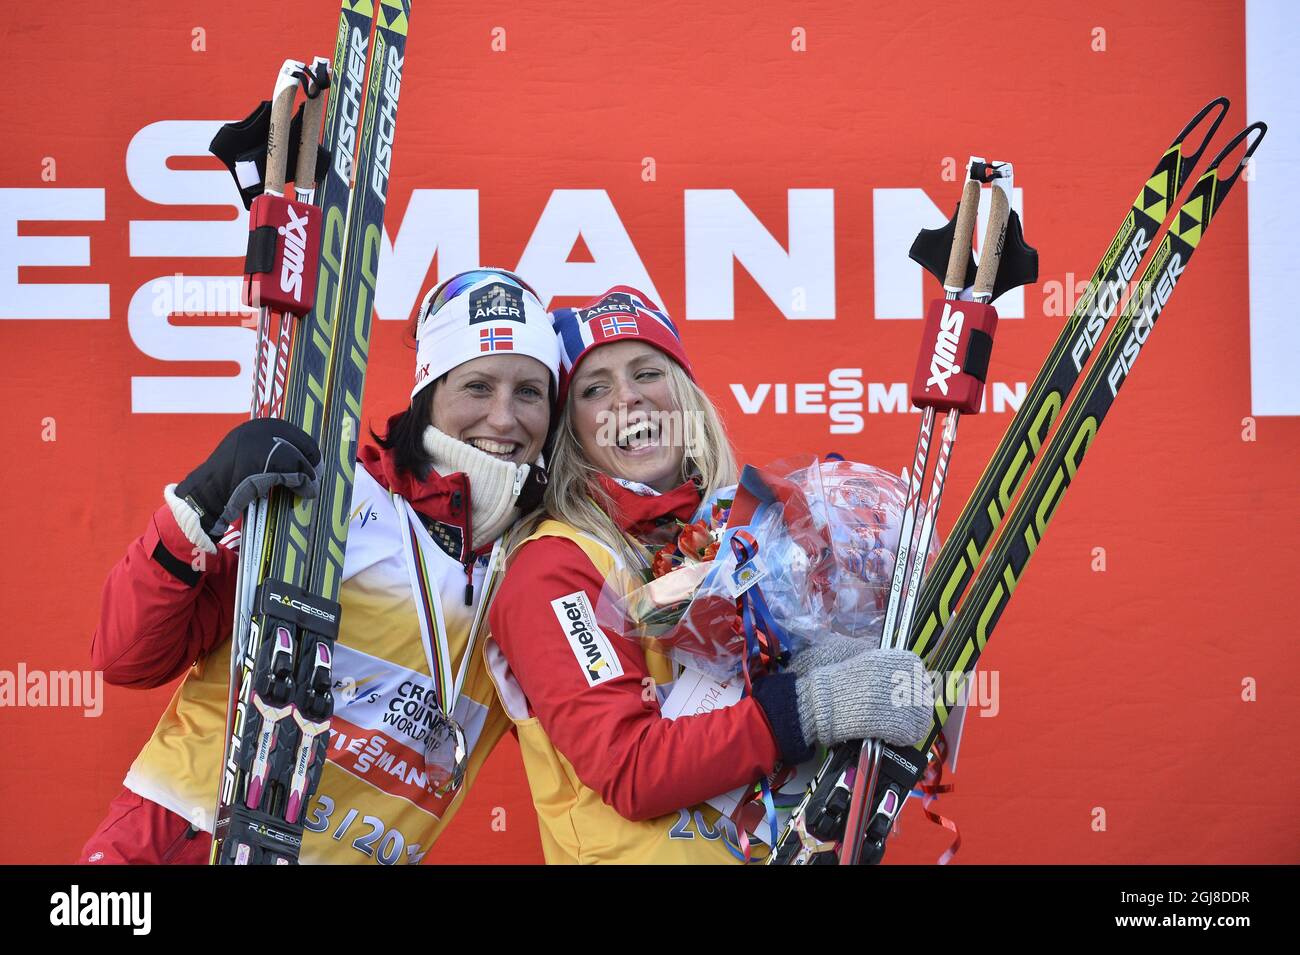 La Norvège Therese Johaug célèbre sur le podium avec le trophée comme vainqueur global de la coupe du monde de ski féminin après la poursuite finale de 10 km à Falun, Suède, dimanche 16 mars 2014. Compatriote Marit Bjorgen à gauche. Photo: Anders Wiklund / TT ** SUÈDE SORTIE ** Banque D'Images